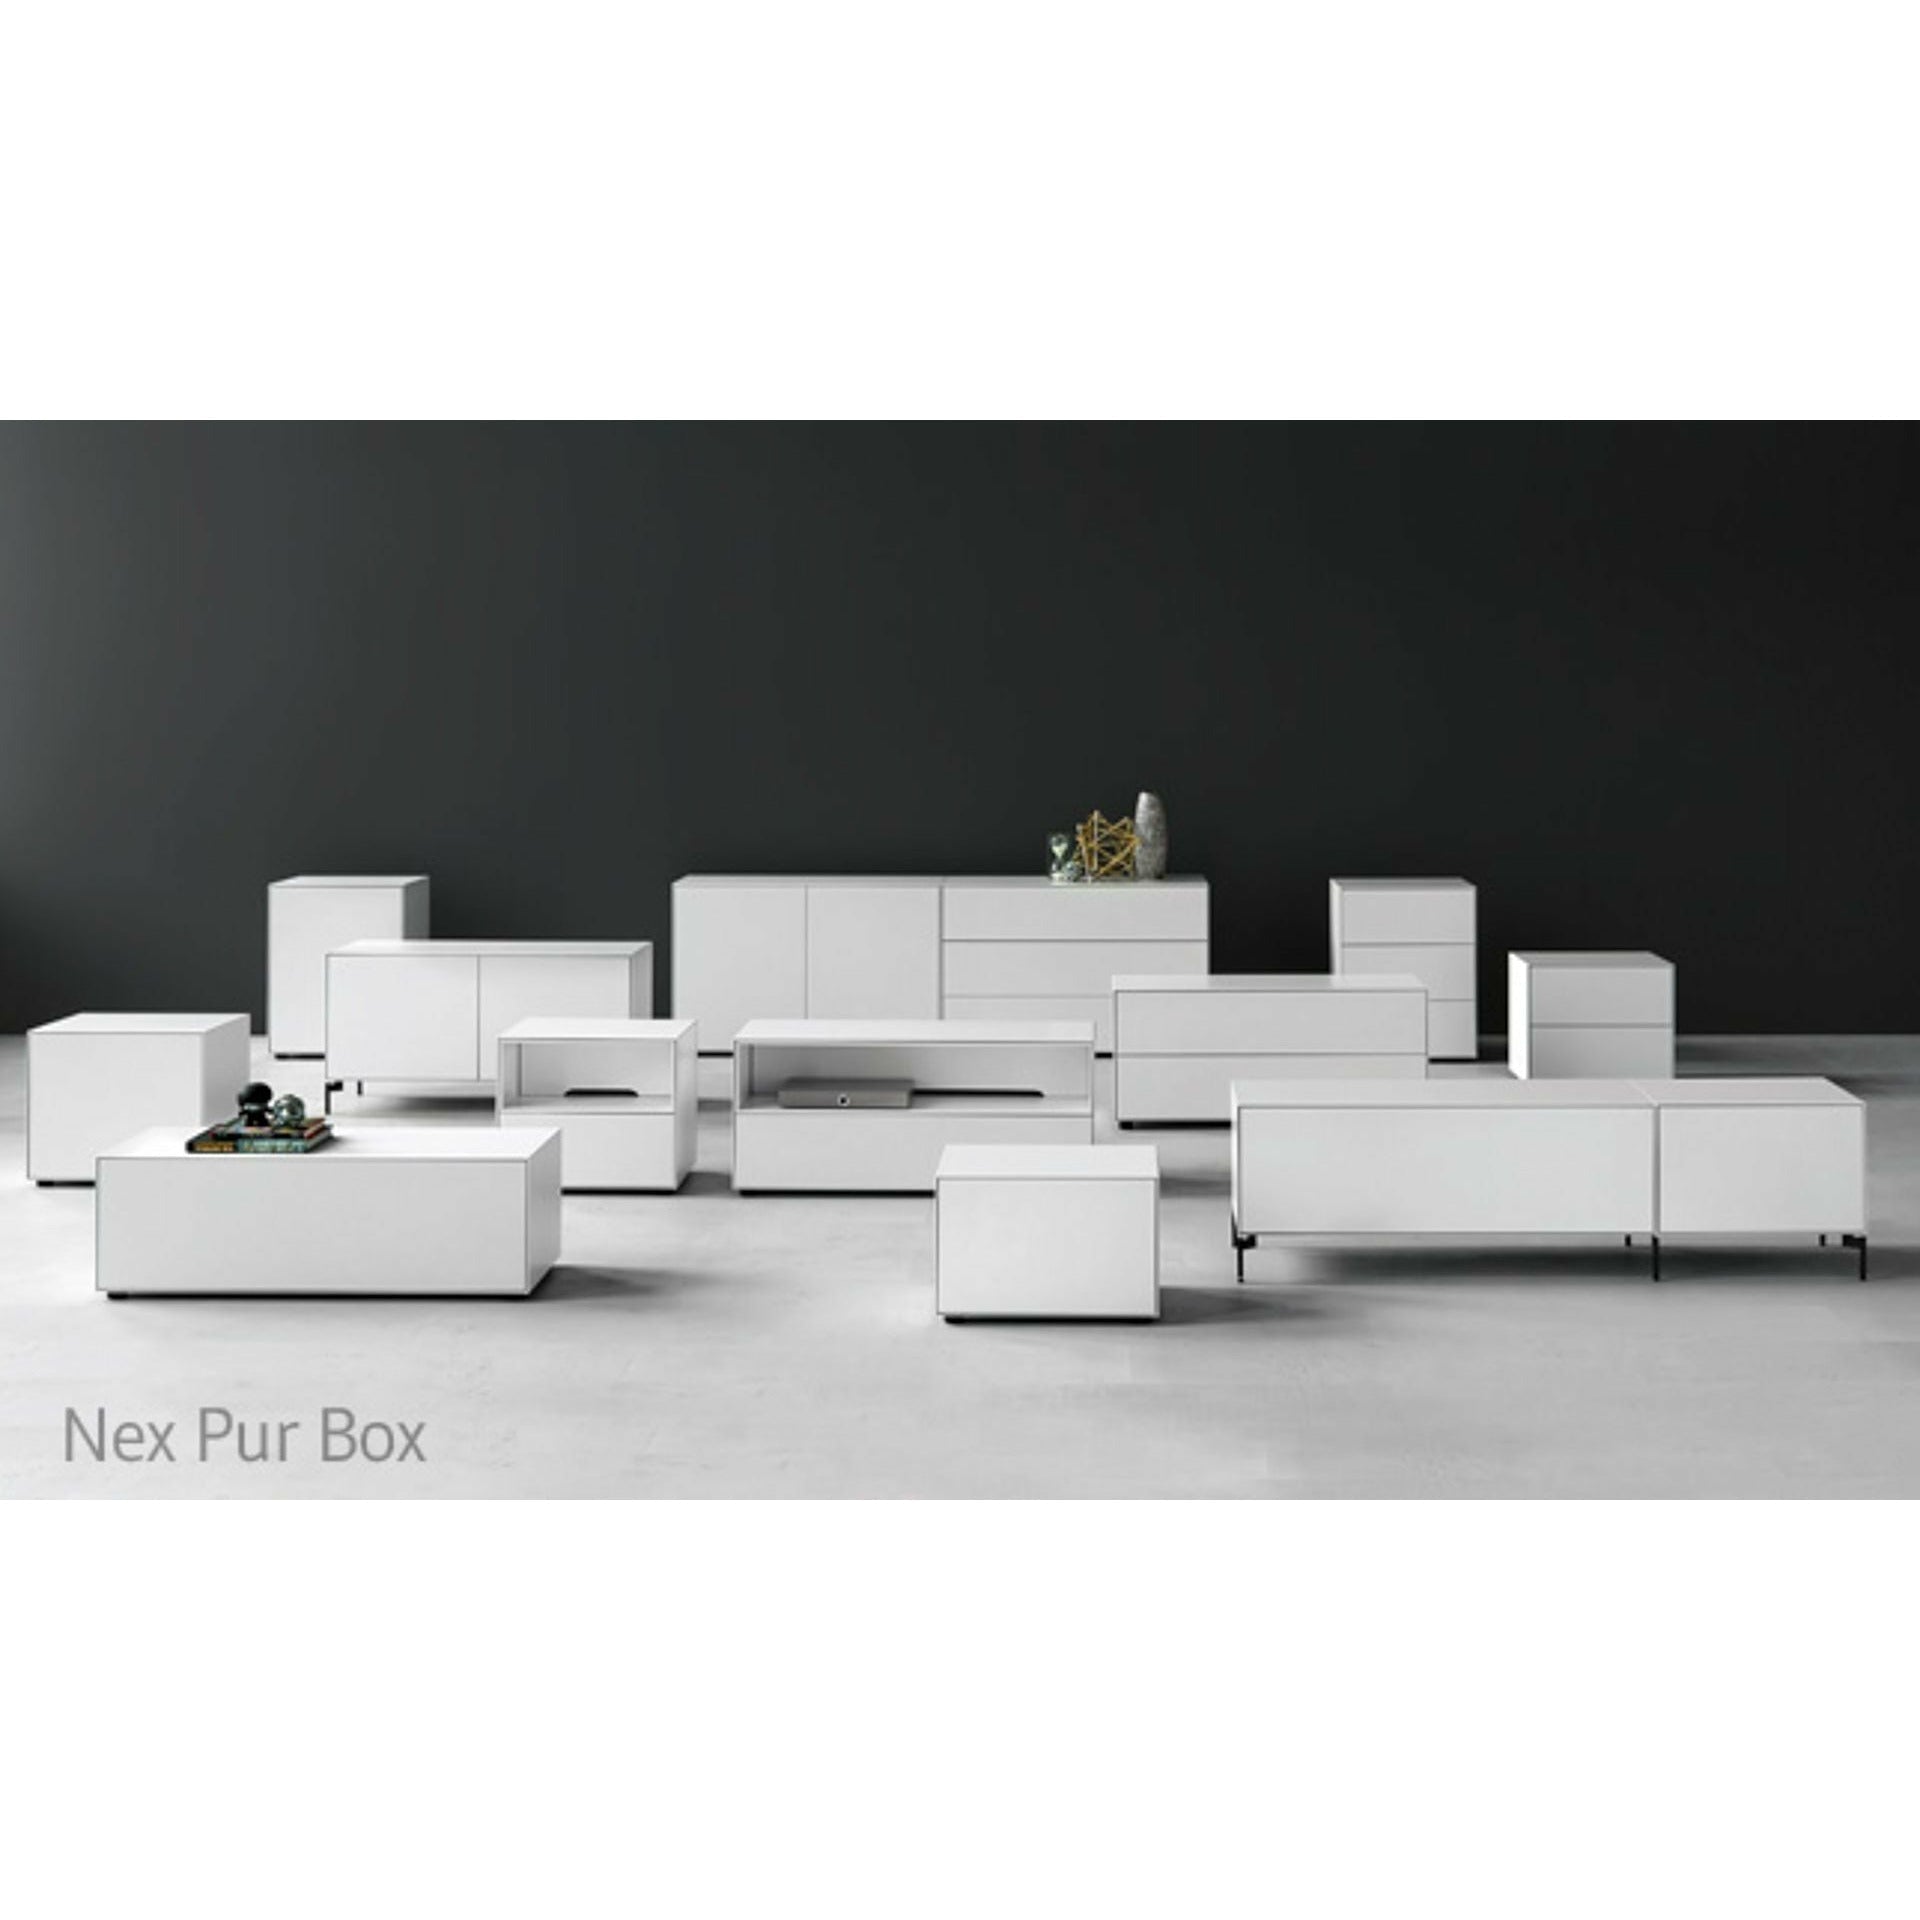 Piure Nex Pur Box Hx W 50x120 cm, 2 szuflady